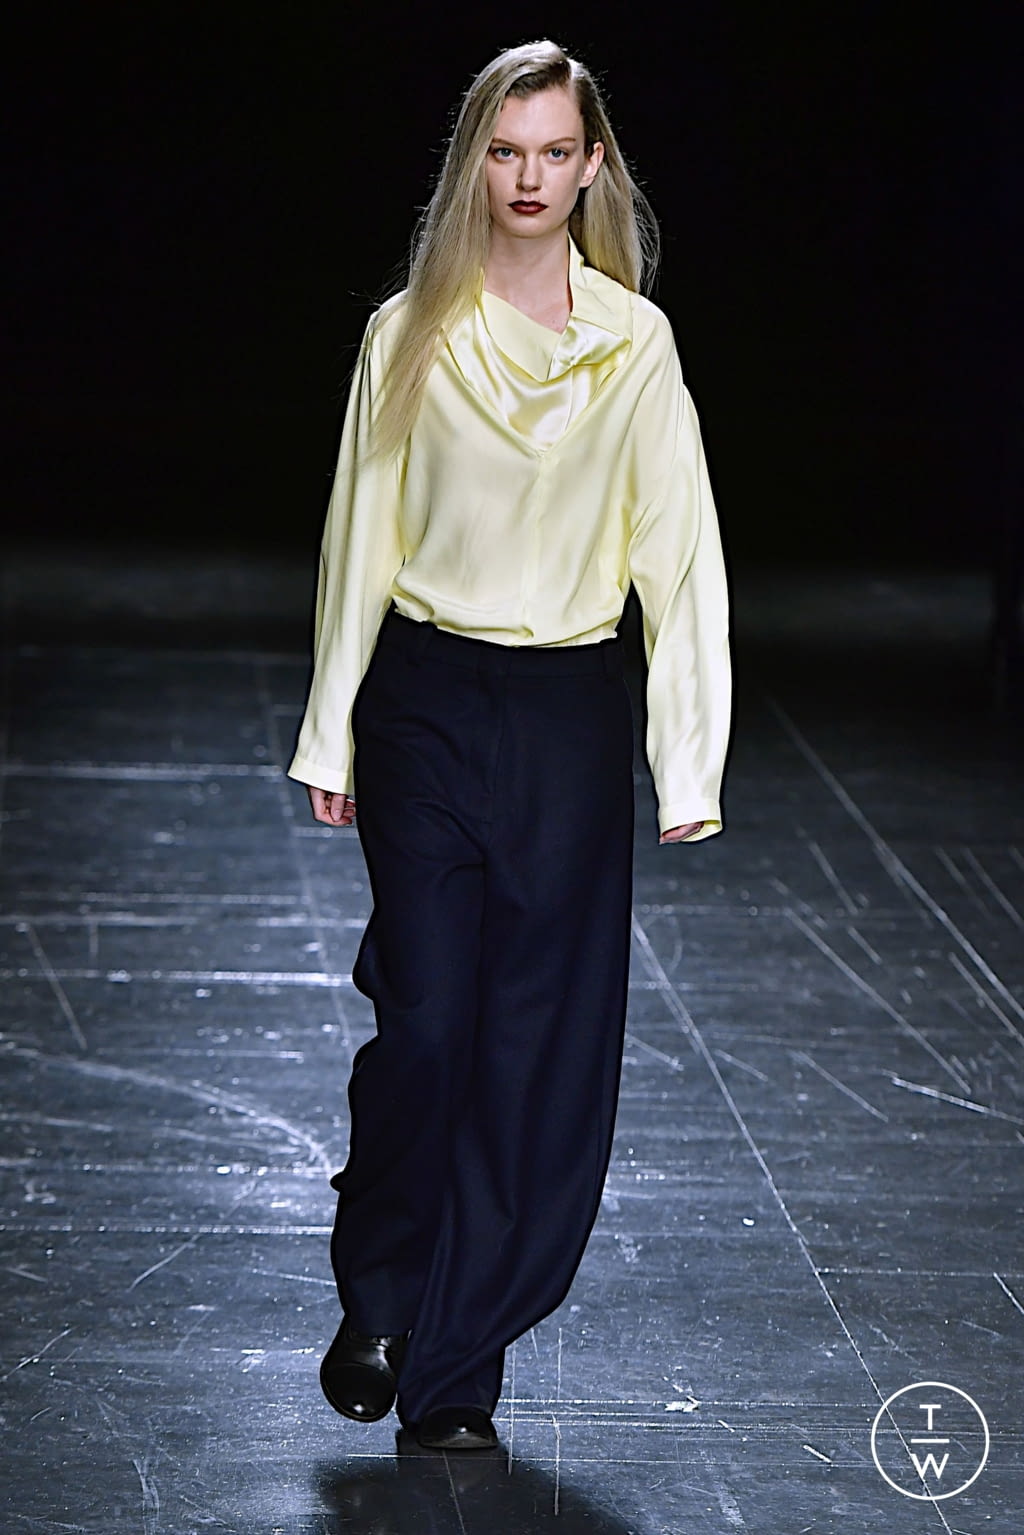 Laura Biagiotti FW22 womenswear #10 - Tagwalk: The Fashion Search Engine